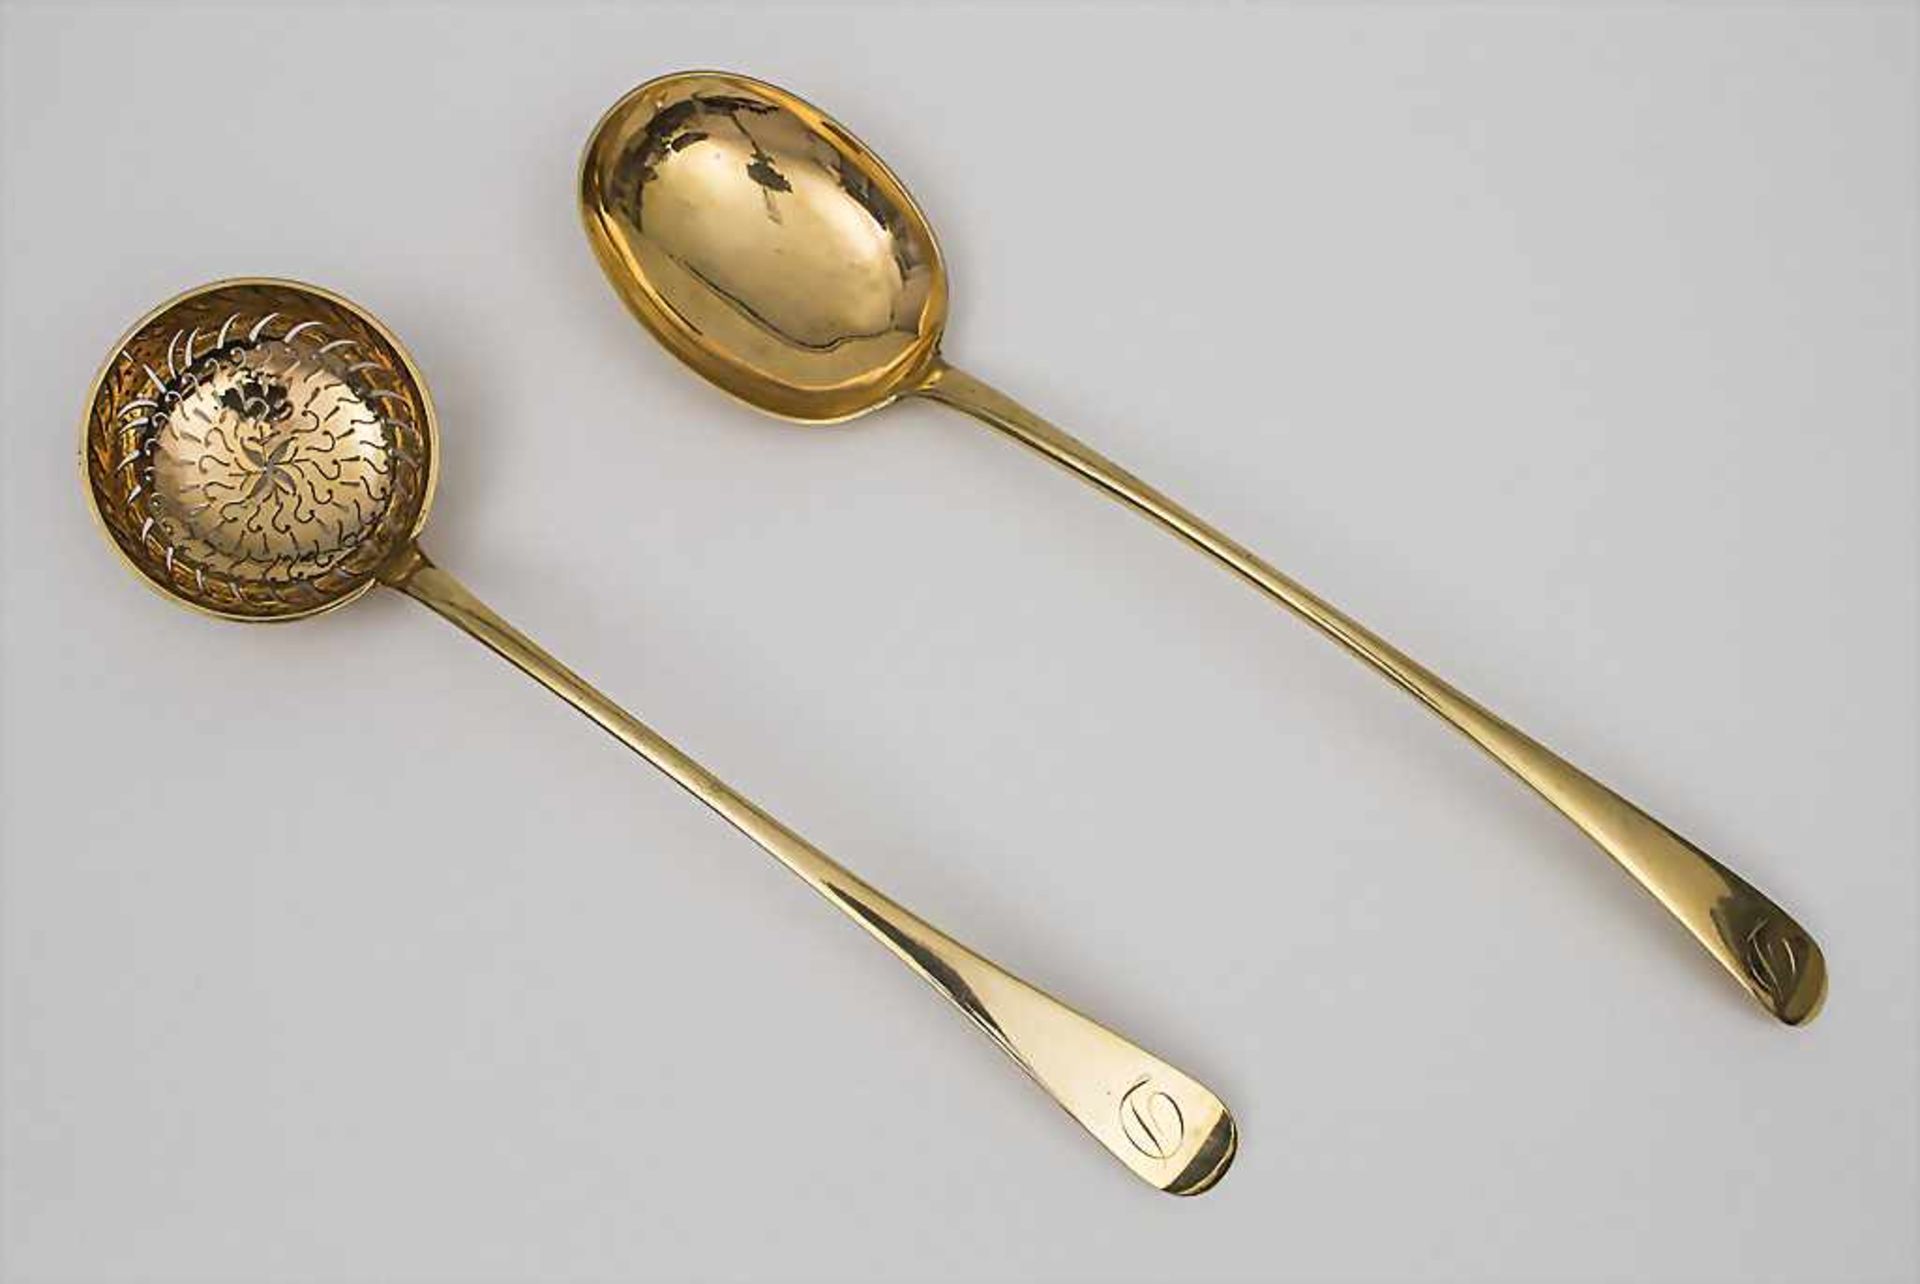 Vorlegelöffel und Zuckerstreuer / A Serving Spoon and Sugar Sparkler, Anfang 20. Jh.Material: Silber